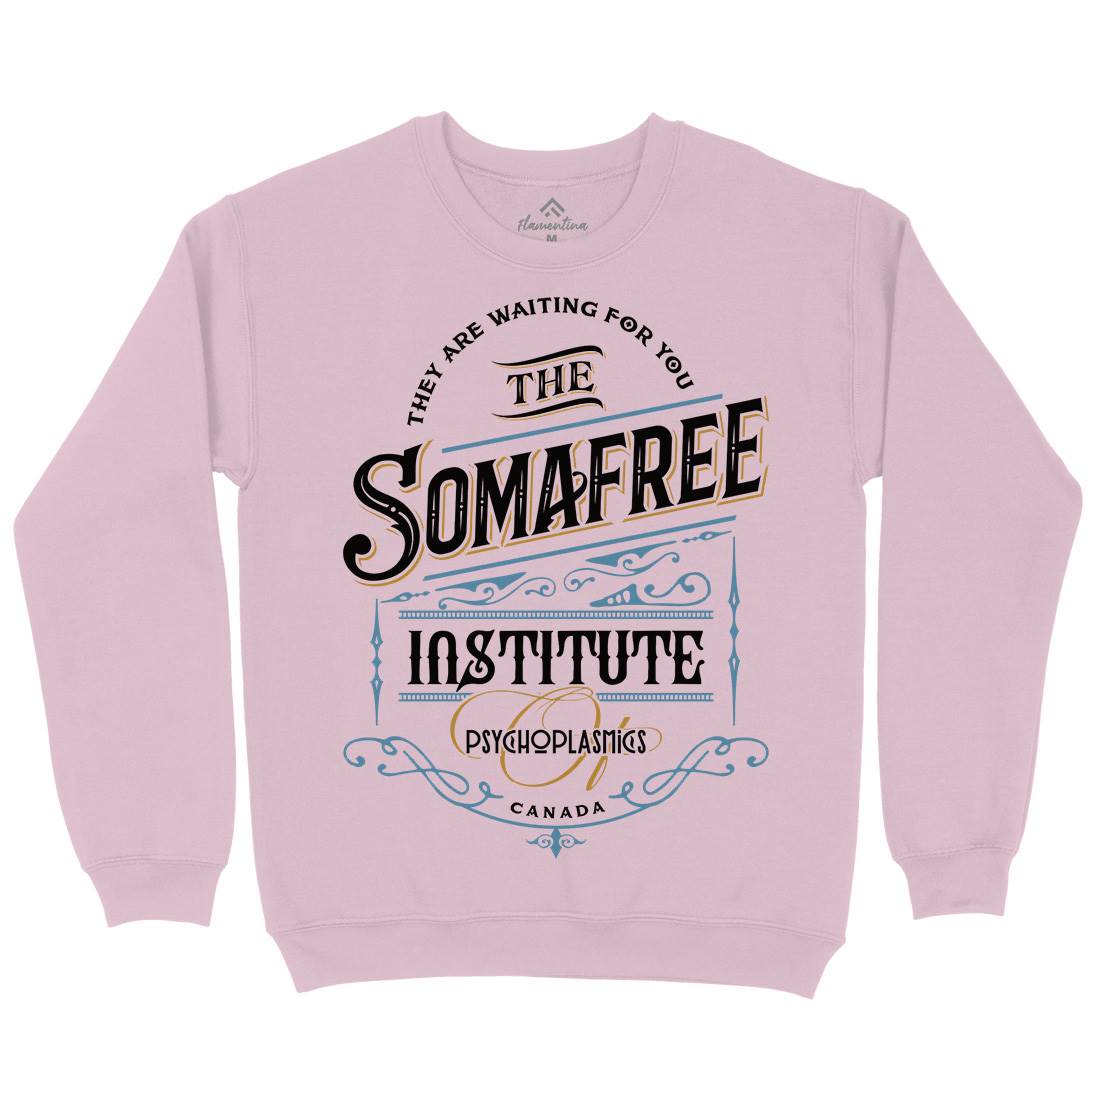 Somafree Institute Kids Crew Neck Sweatshirt Horror D345